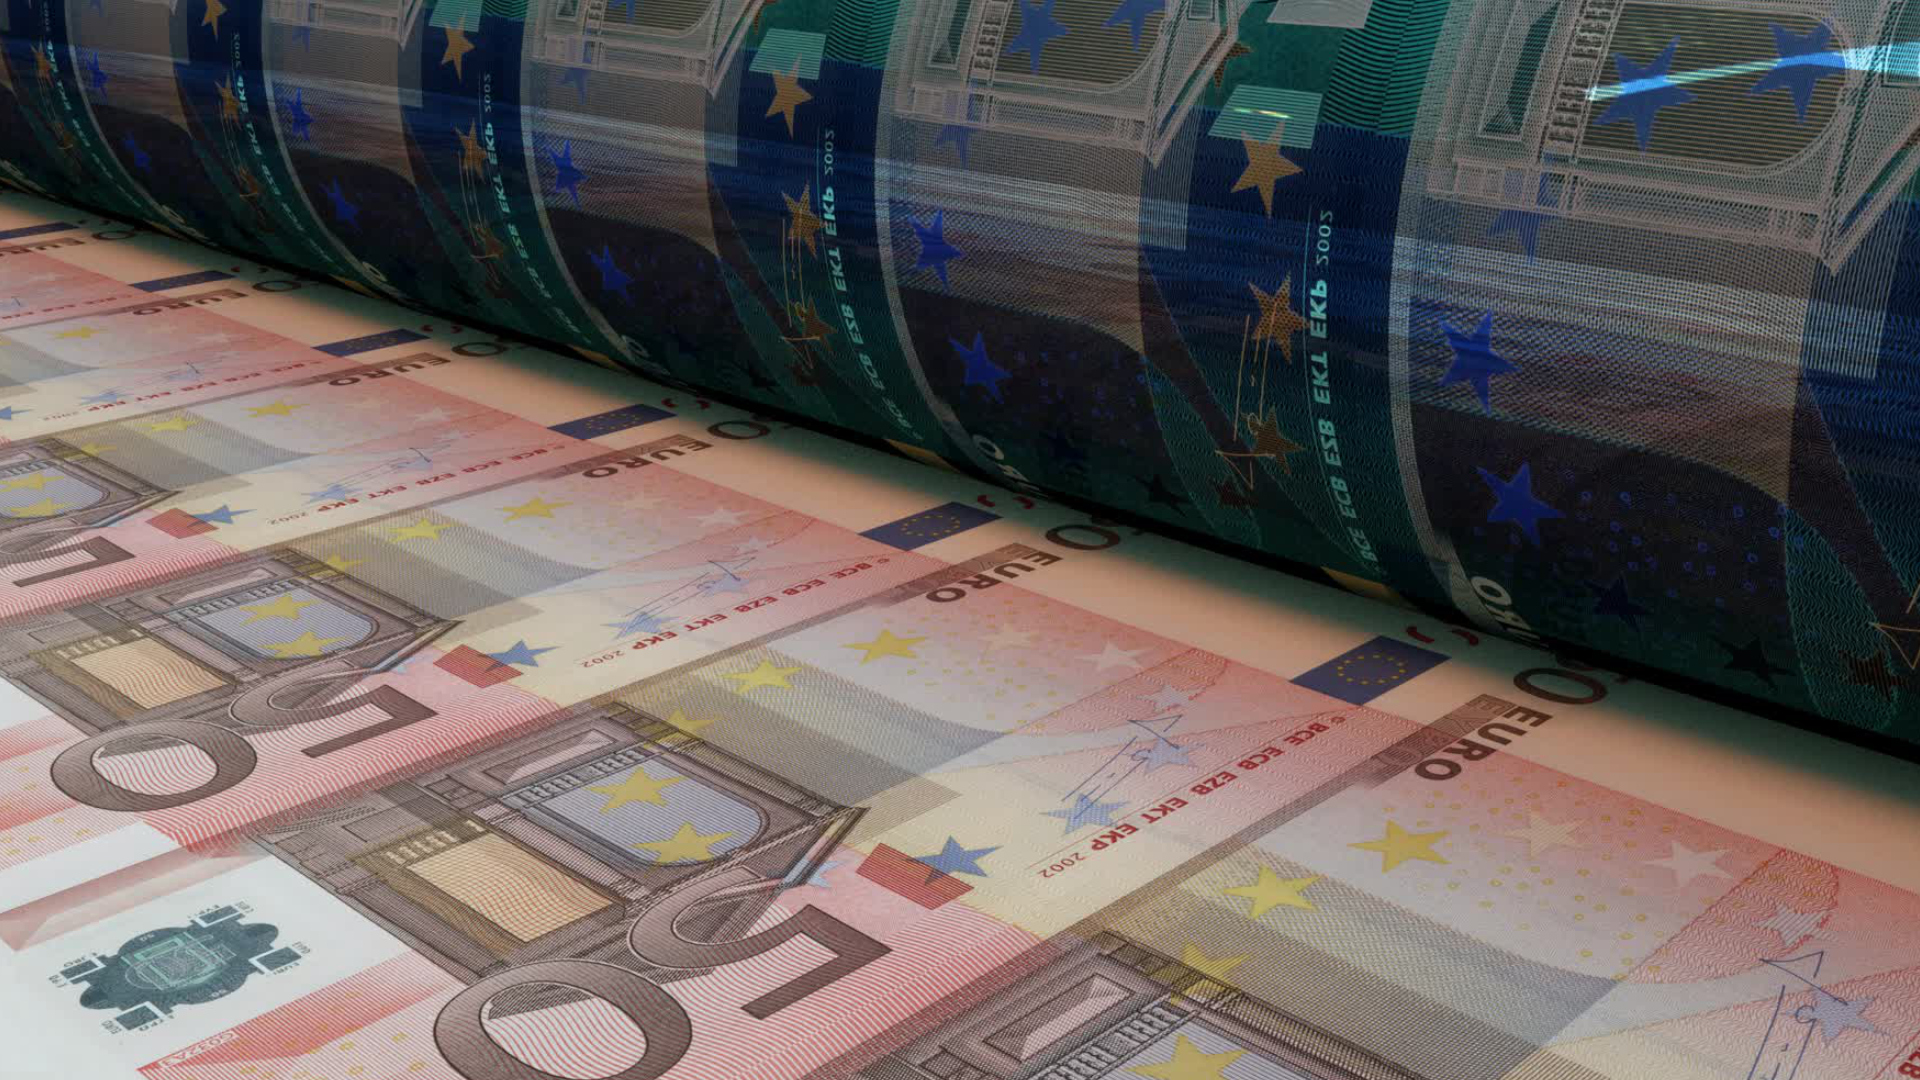 Le nouveau billet de 5 euros est bientôt dans votre portemonnaie